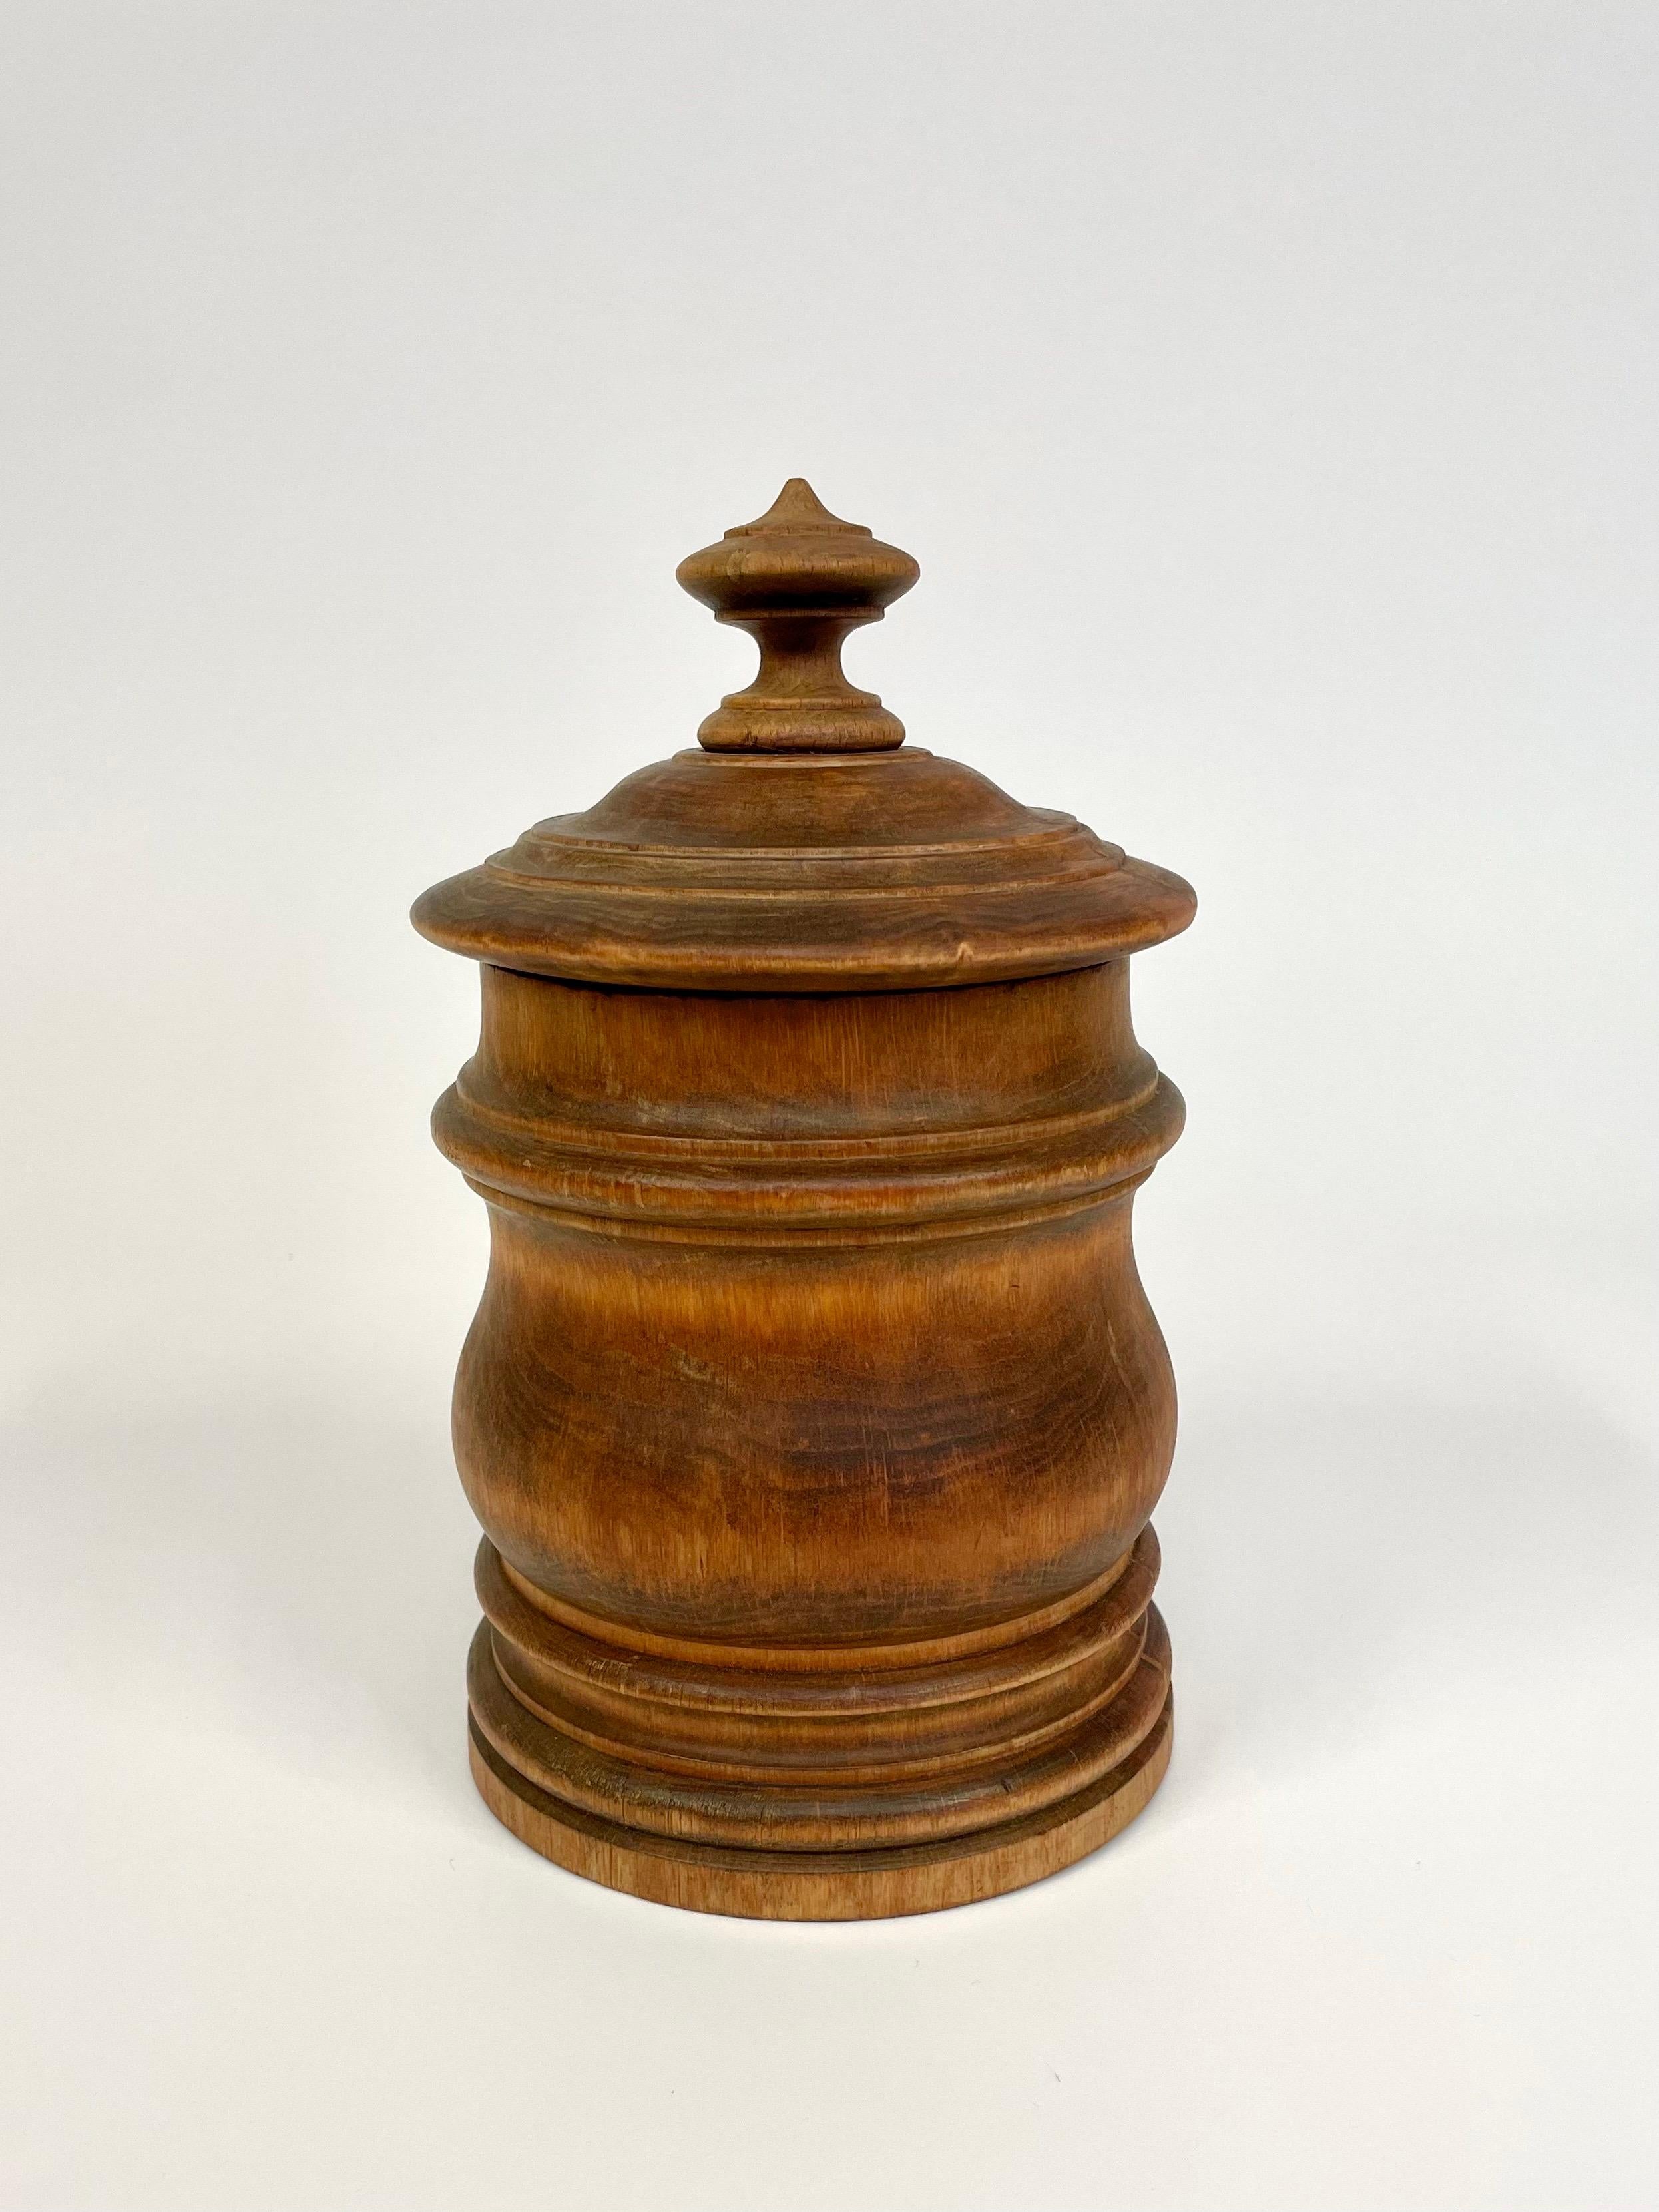 Il s'agit d'une boîte à tabac suédoise de la fin du 19e siècle en bois tourné et avec un couvercle tourné bien ajusté. 
Il se présente dans une teinte légèrement brique et il reste dans la boîte un léger et agréable parfum de tabac.
